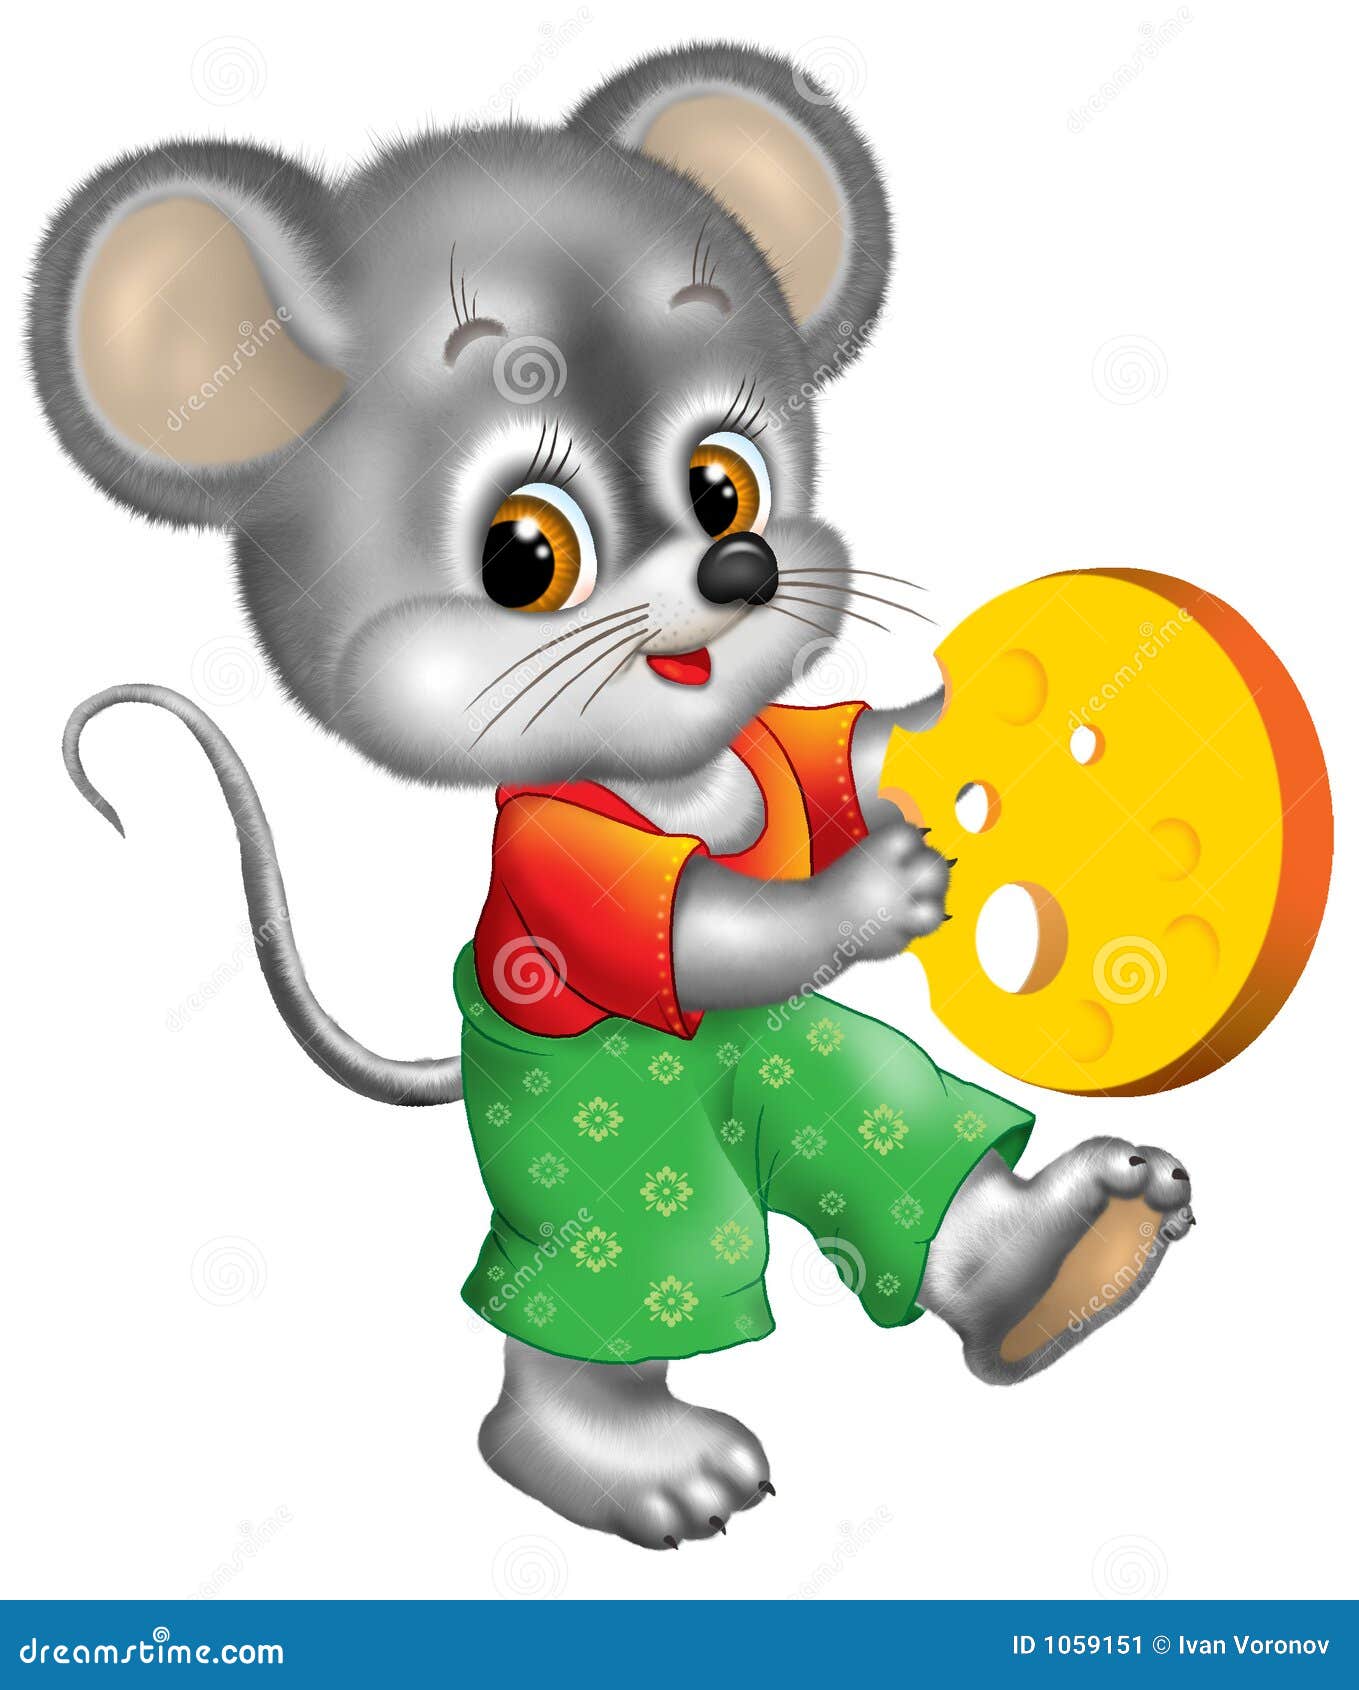 Включи мышонок идет в детский садик. Мышонок для детей. Сказочные герои мышка. Мышка из теремка. Мышонок мультяшный.